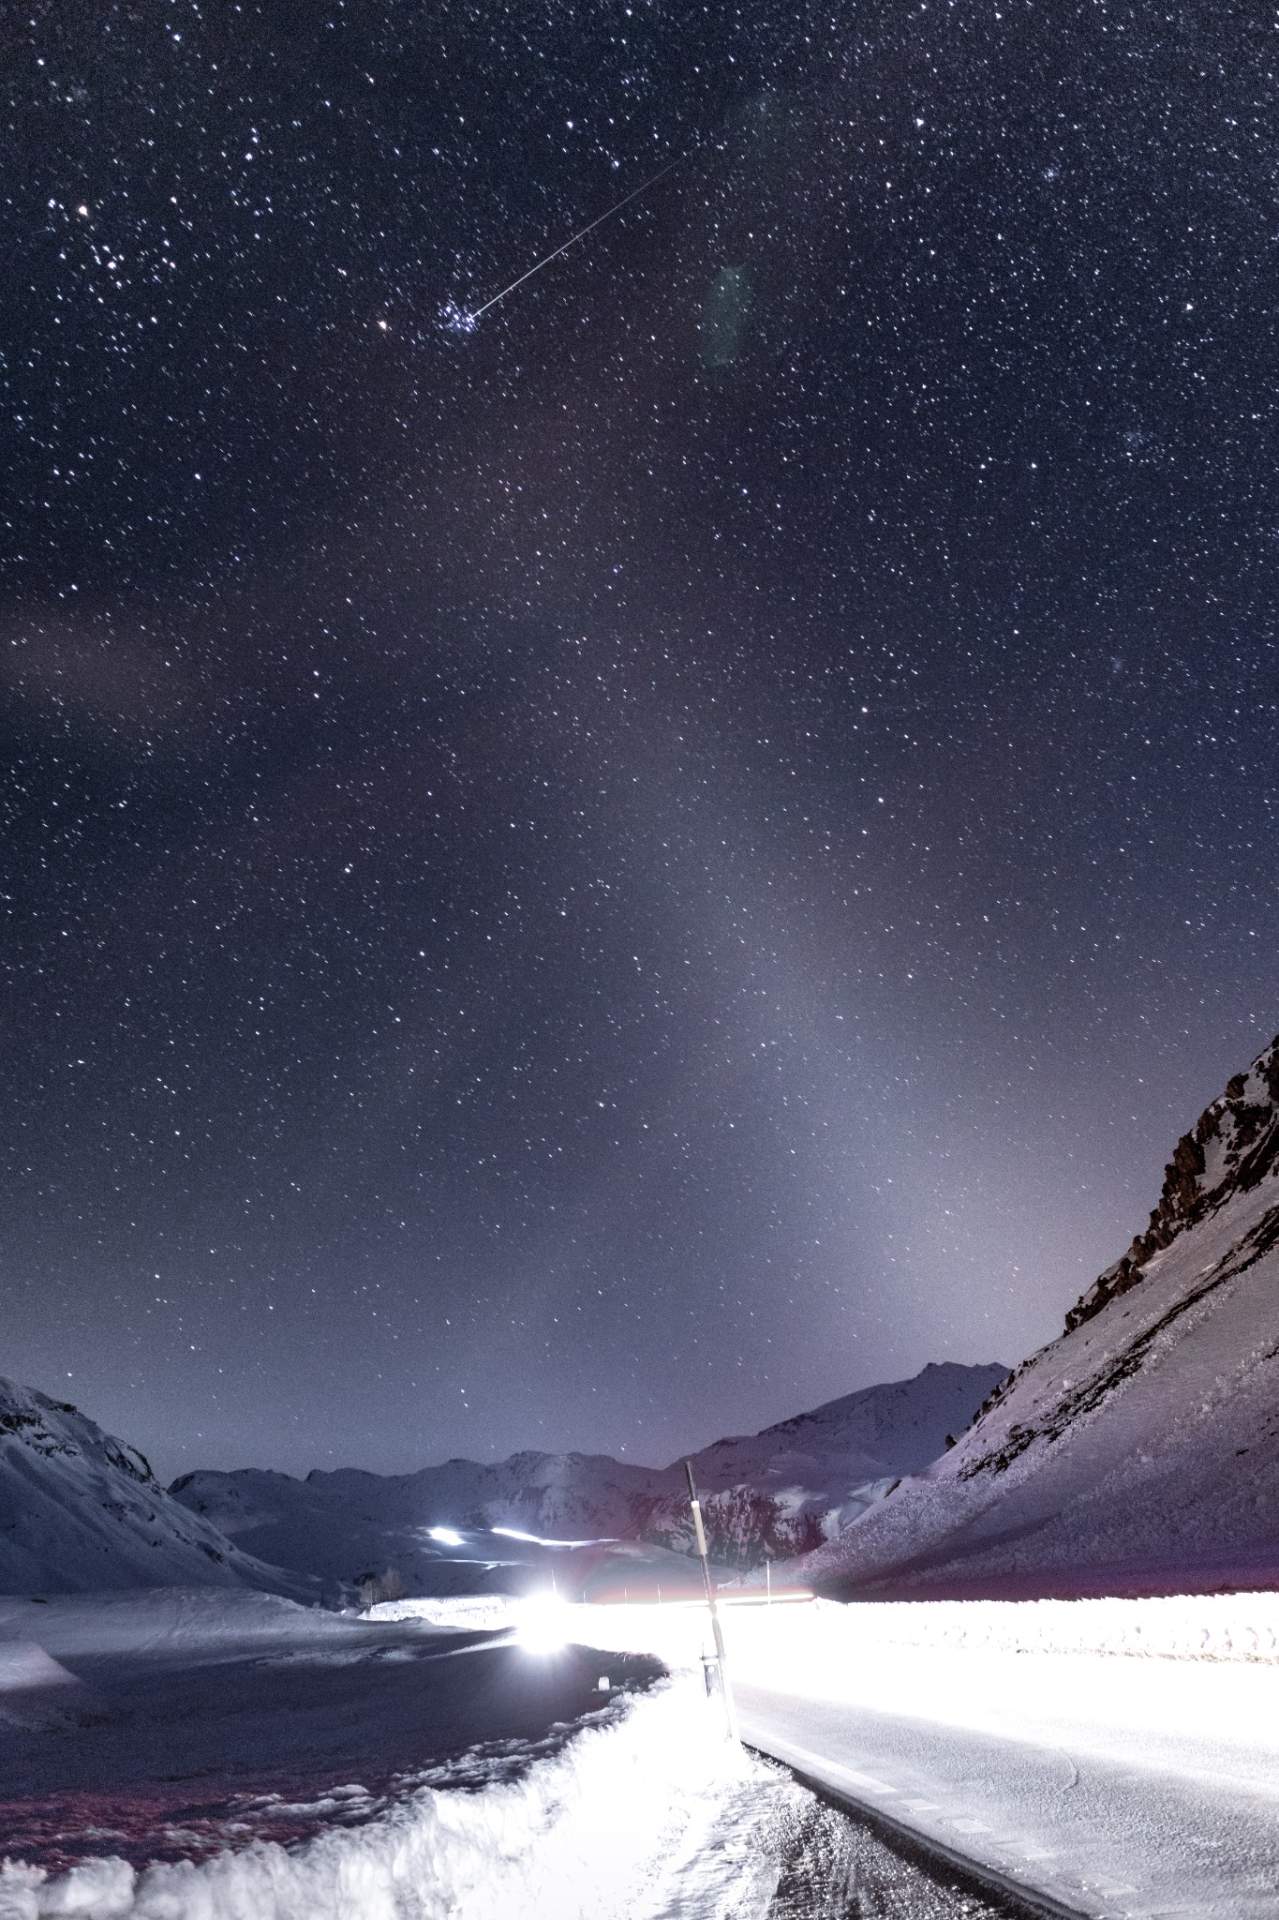 Abb. 1: Eine Sternschnuppe in einer eisigen Winternacht über dem Julierpass im Kanton Graubünden. Gut zu erkennen auch das ausgeprägte Zodiakallicht (Lichtkegel in der unteren rechten Bildhälfte). Fotografiert von Dominic Kurz von UwBe International im März 2021.